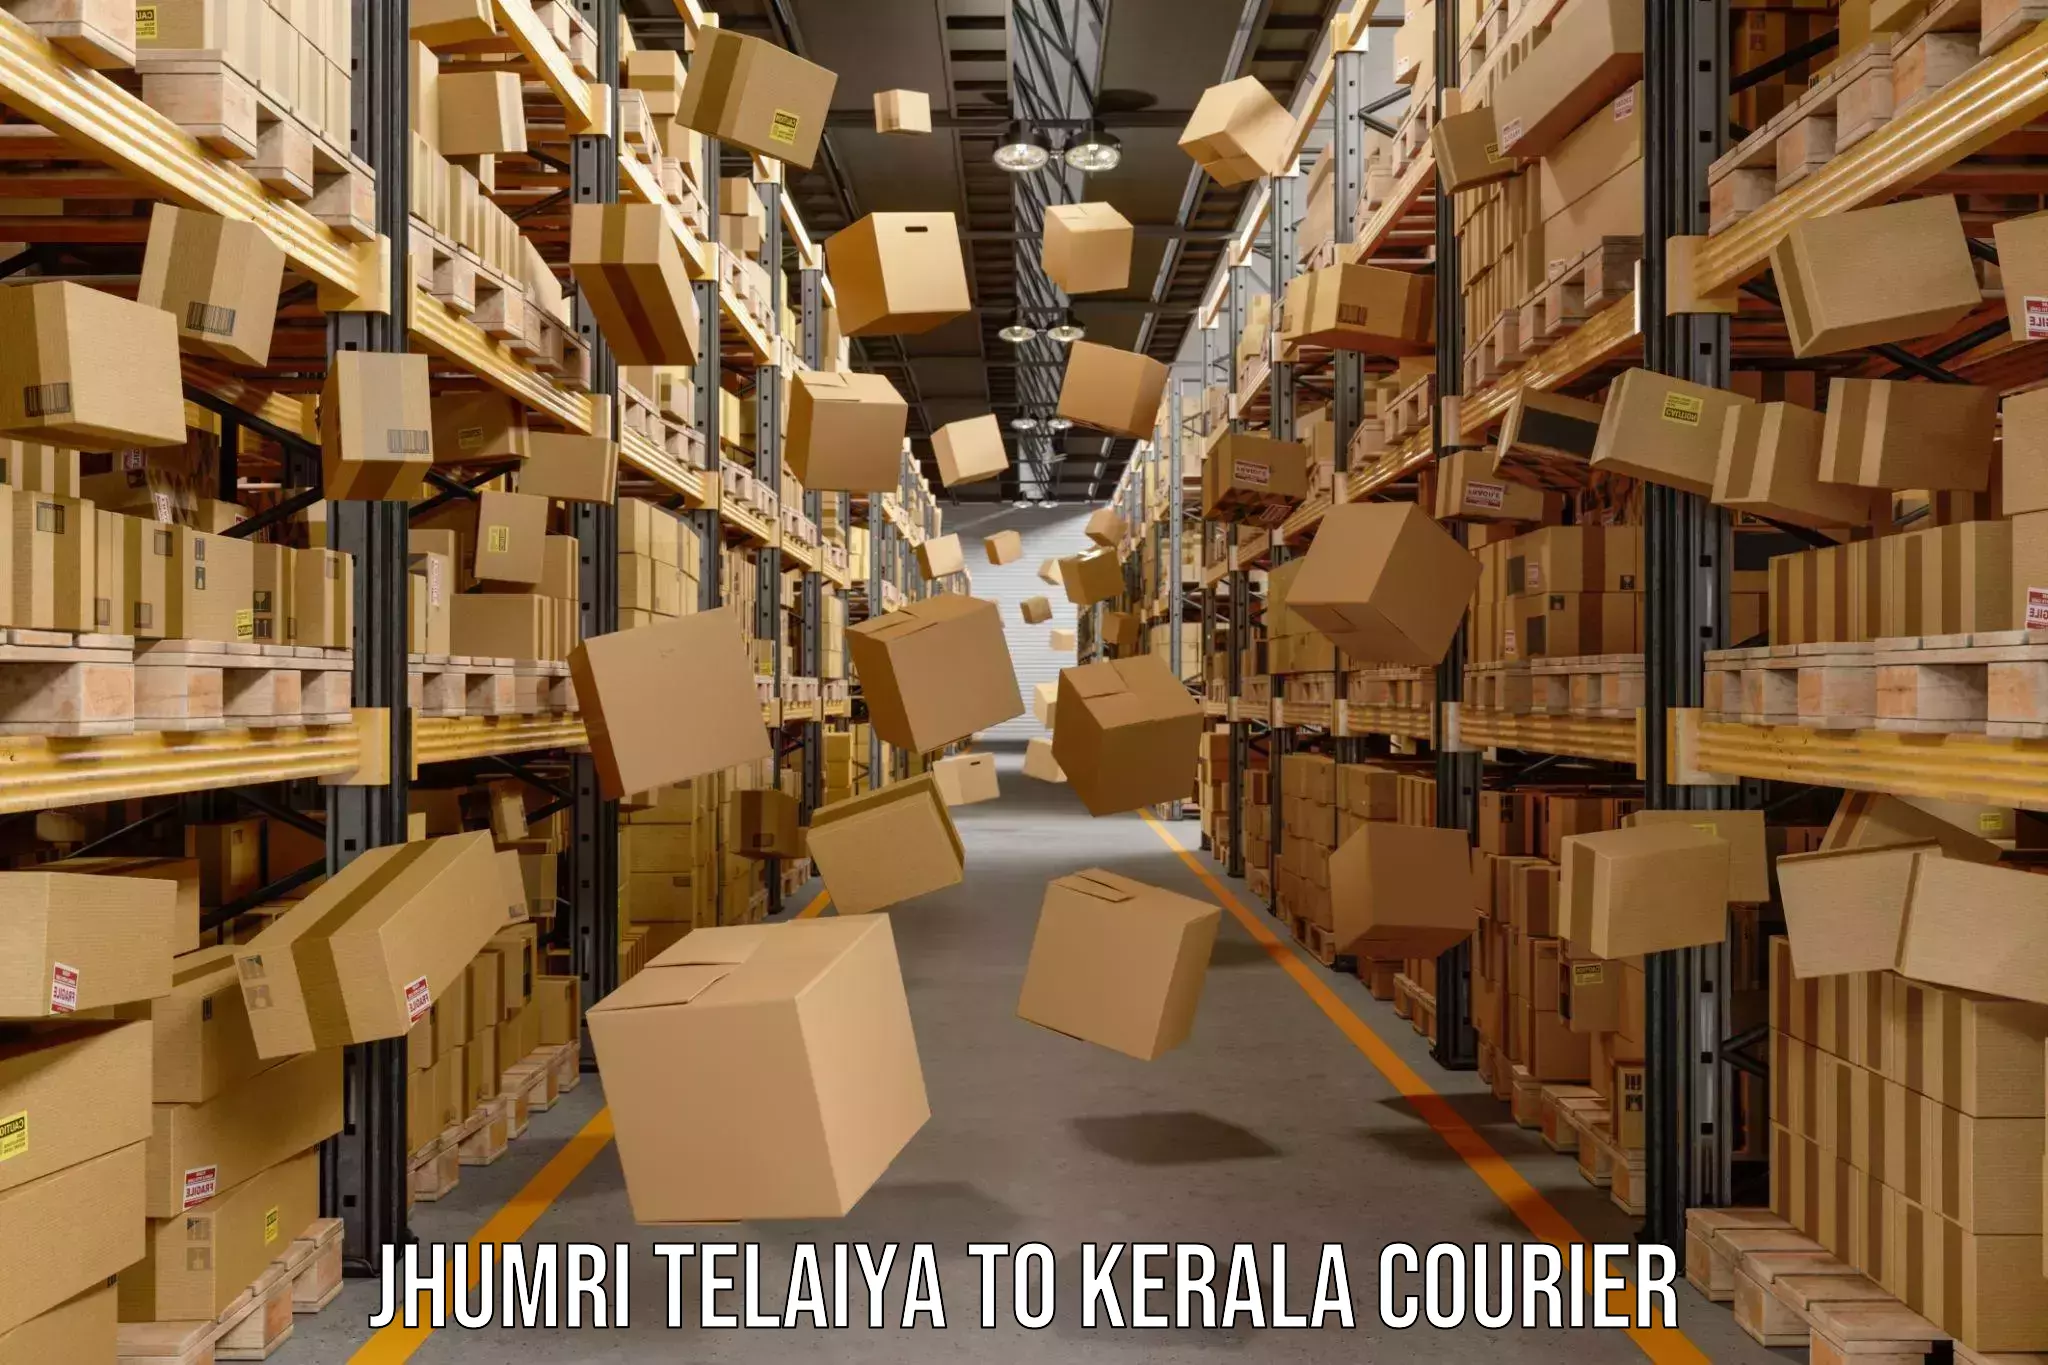 Doorstep delivery service Jhumri Telaiya to Nuchiyad